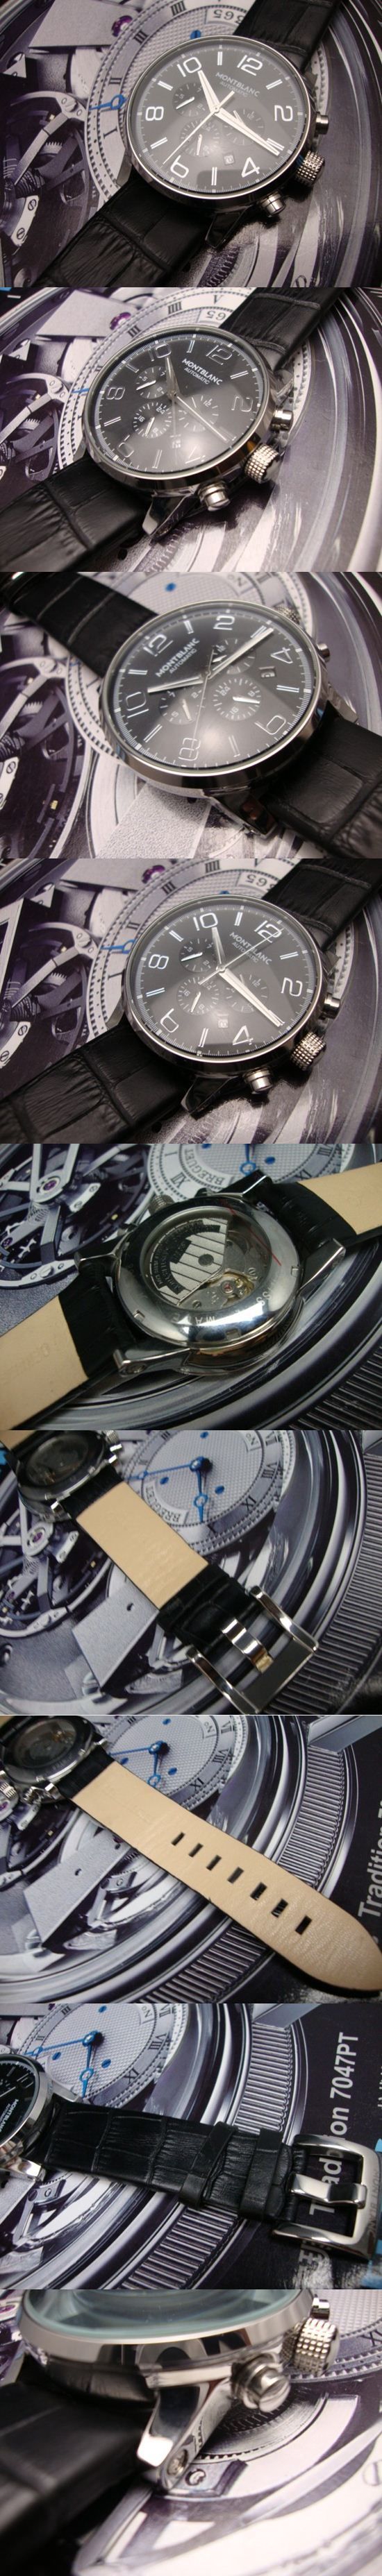 おしゃれなブランド時計がMONTBLANC-モンブラン腕時計 モンブラン 男性腕時計 MONTBLANC-N-001A を提供します.